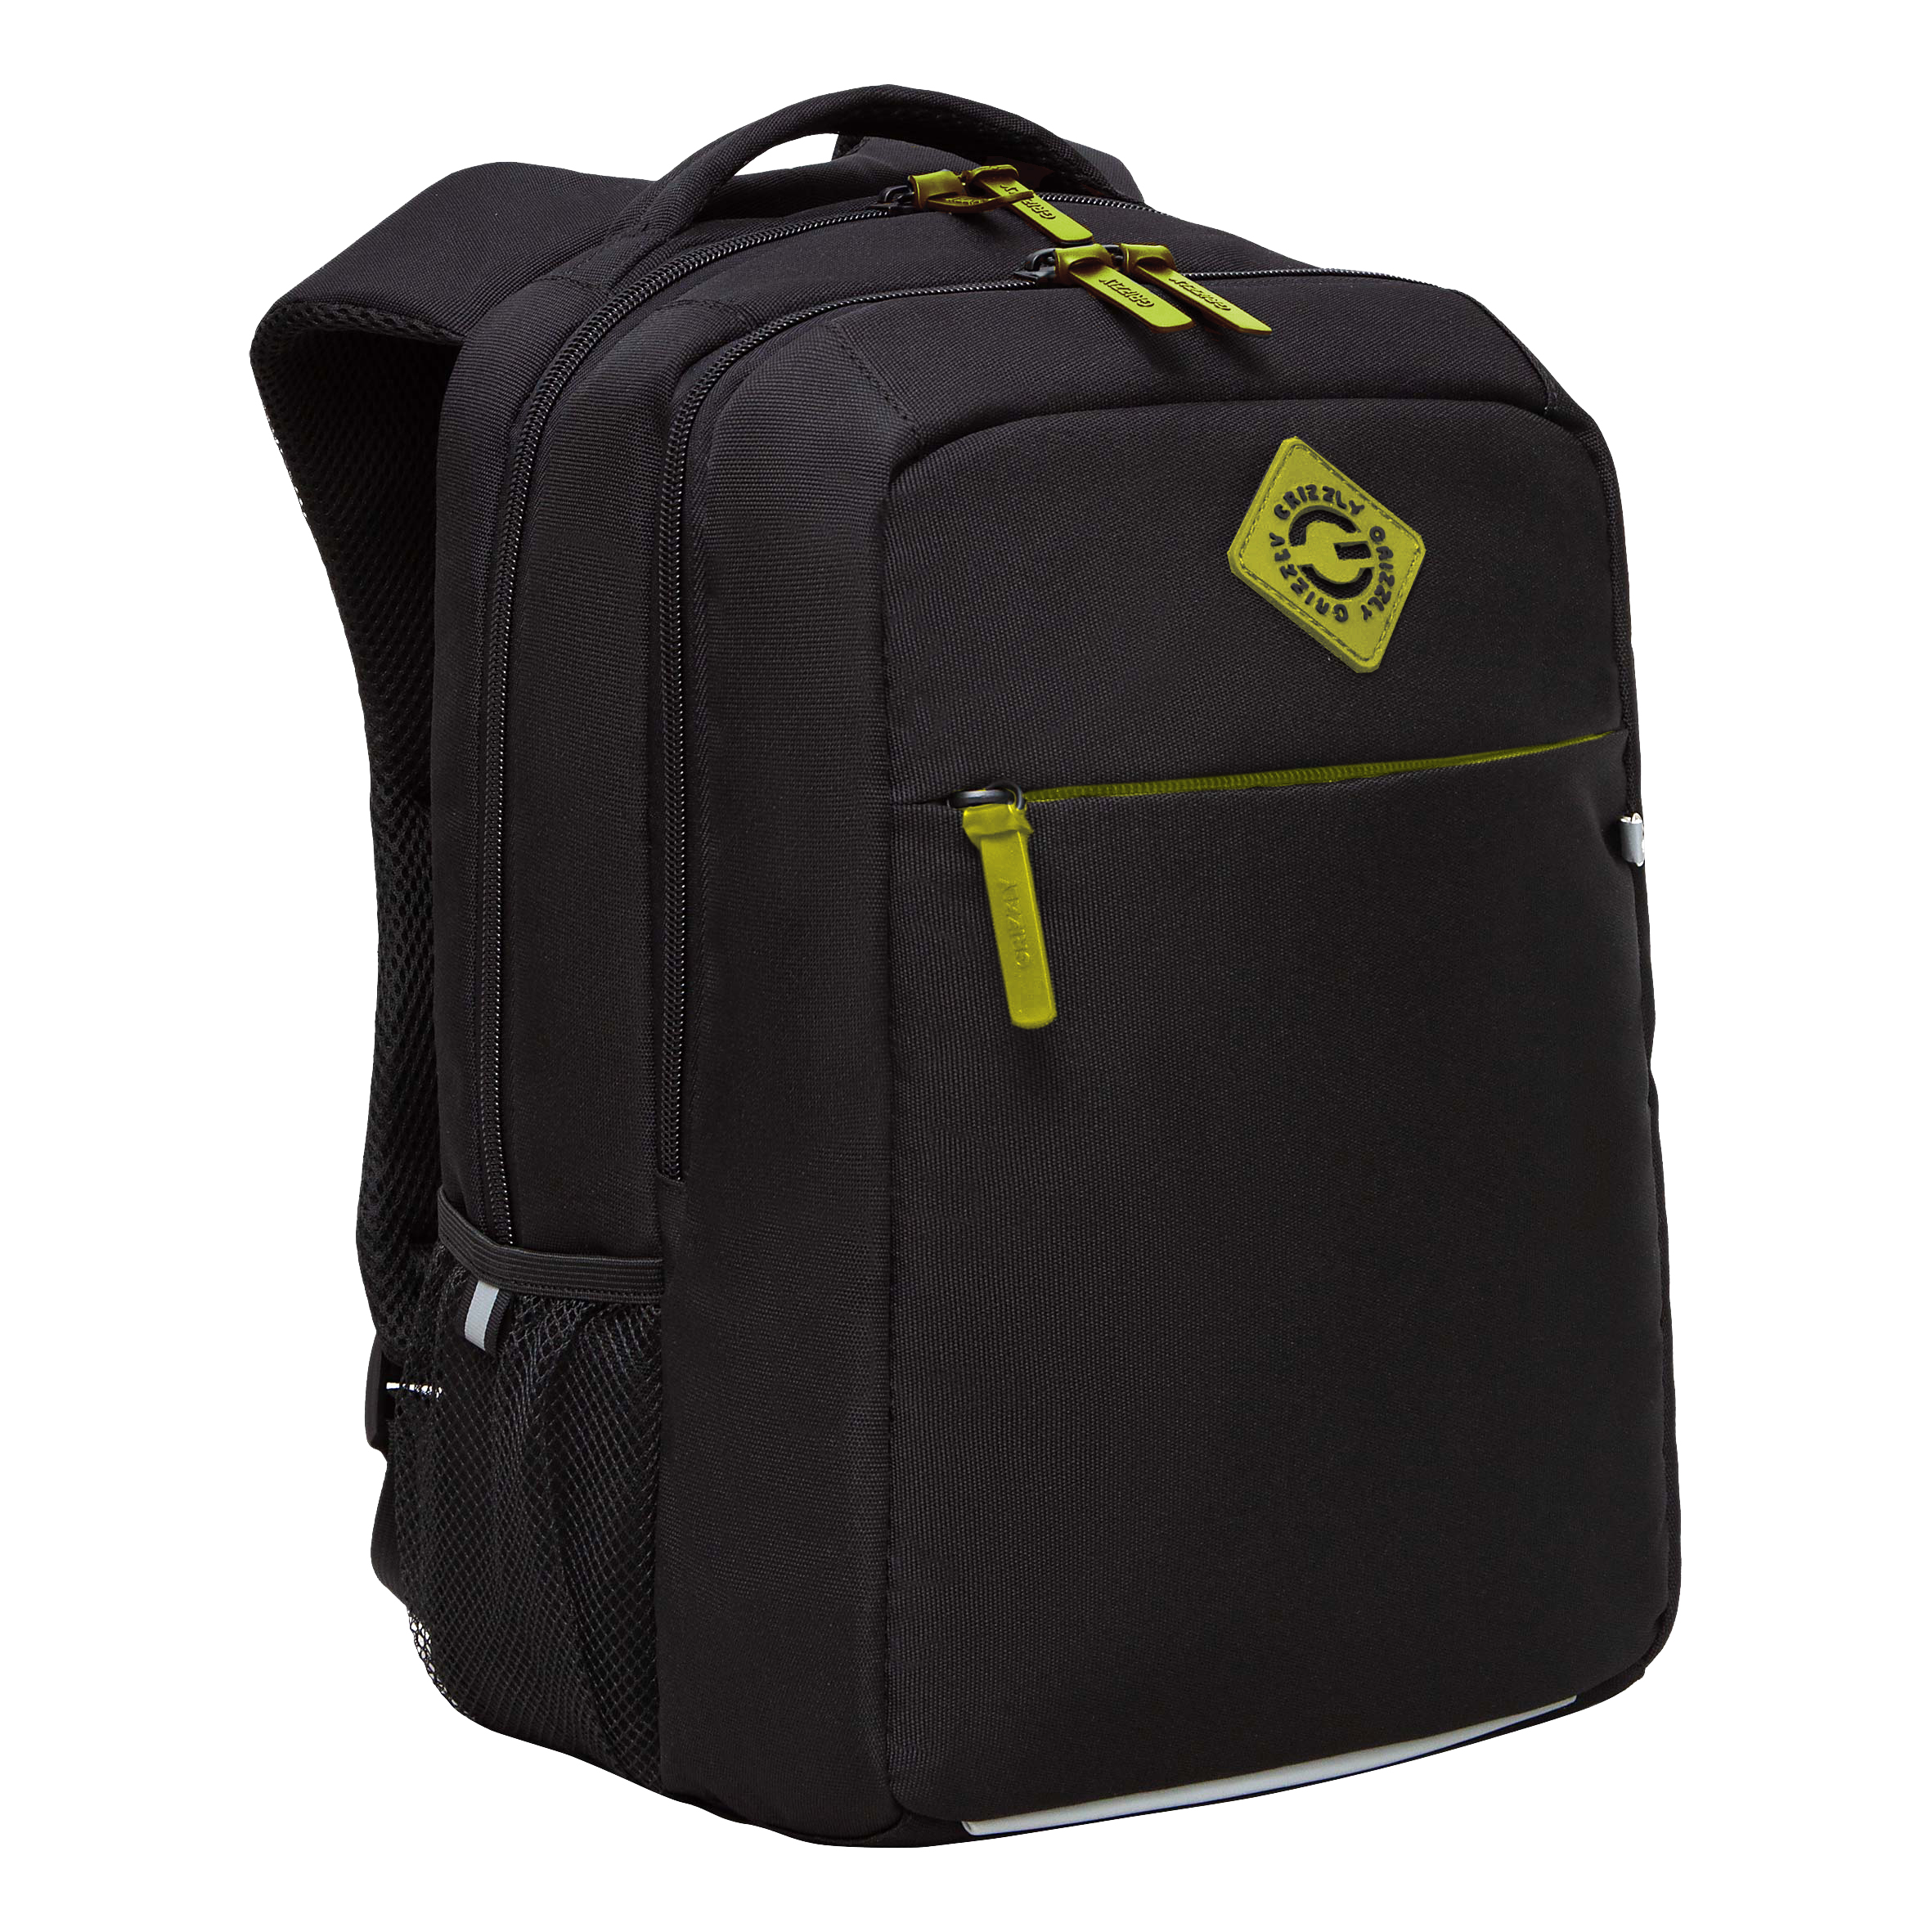 Рюкзак GRIZZLY с карманом для ноутбука 13, анатомический, для мальчика RB-456-12 рюкзак grizzly ru 434 3 2 с отделением для ноутбука анатомический салатовый